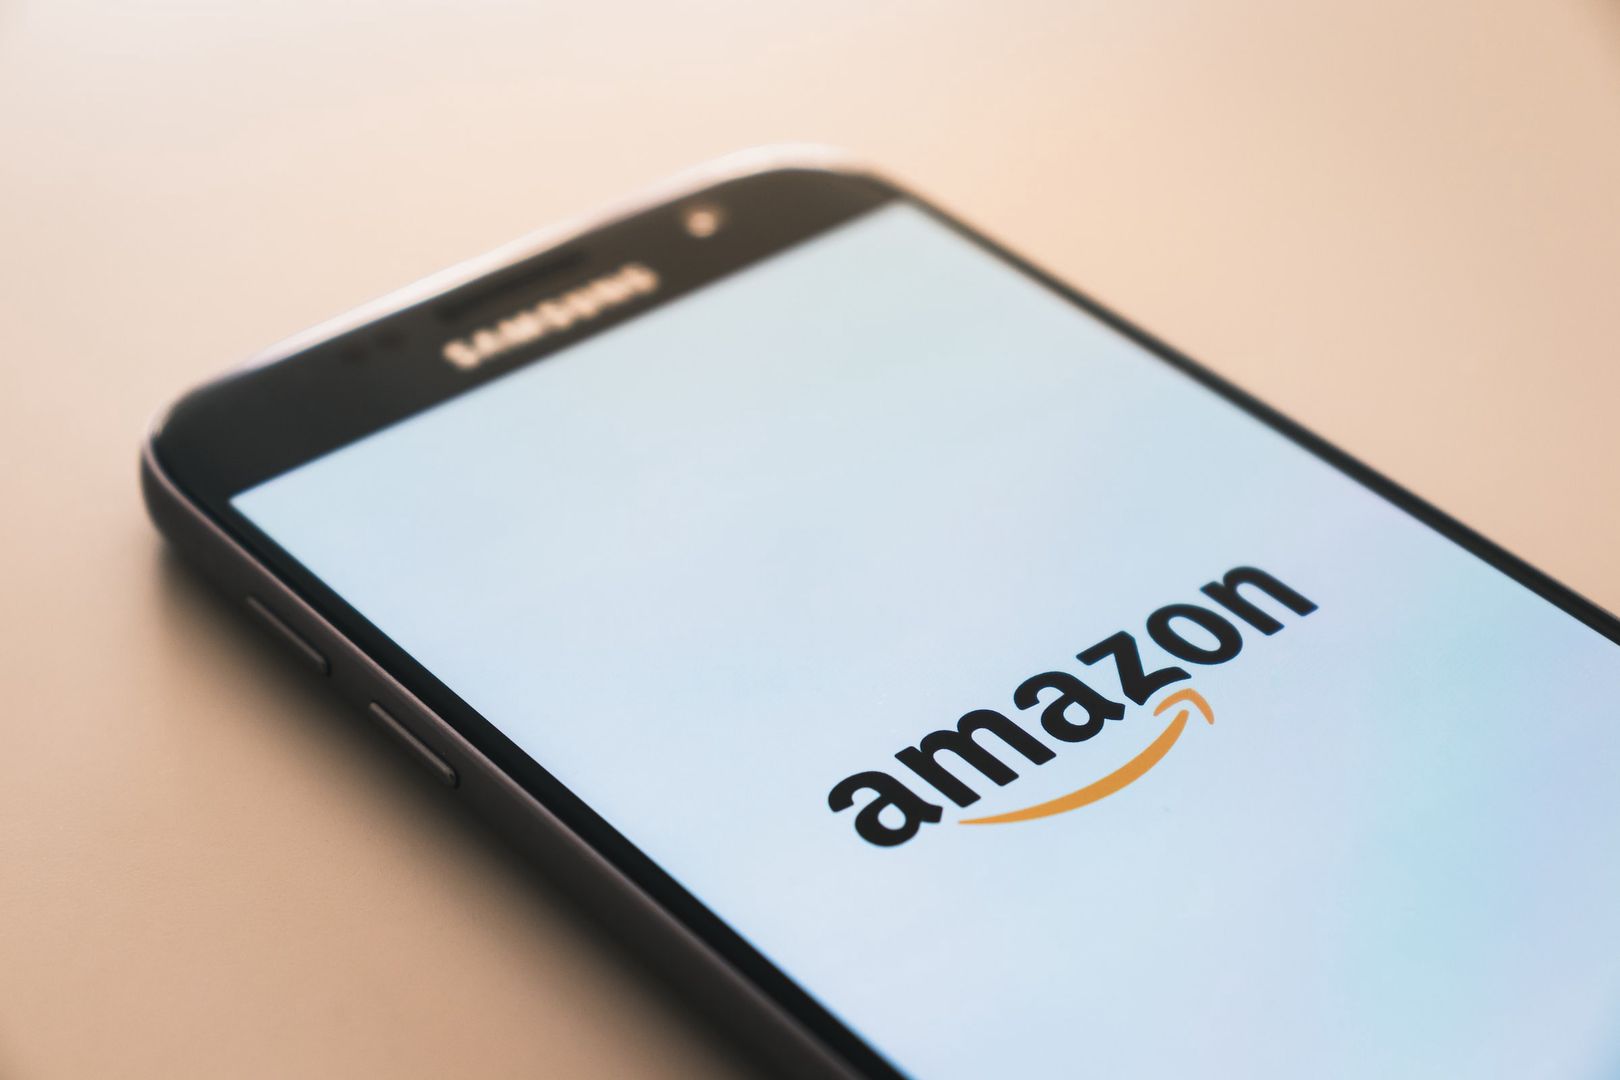 Un empleado de Amazon ha muerto en Leipzig.  La planta no reaccionó – O2